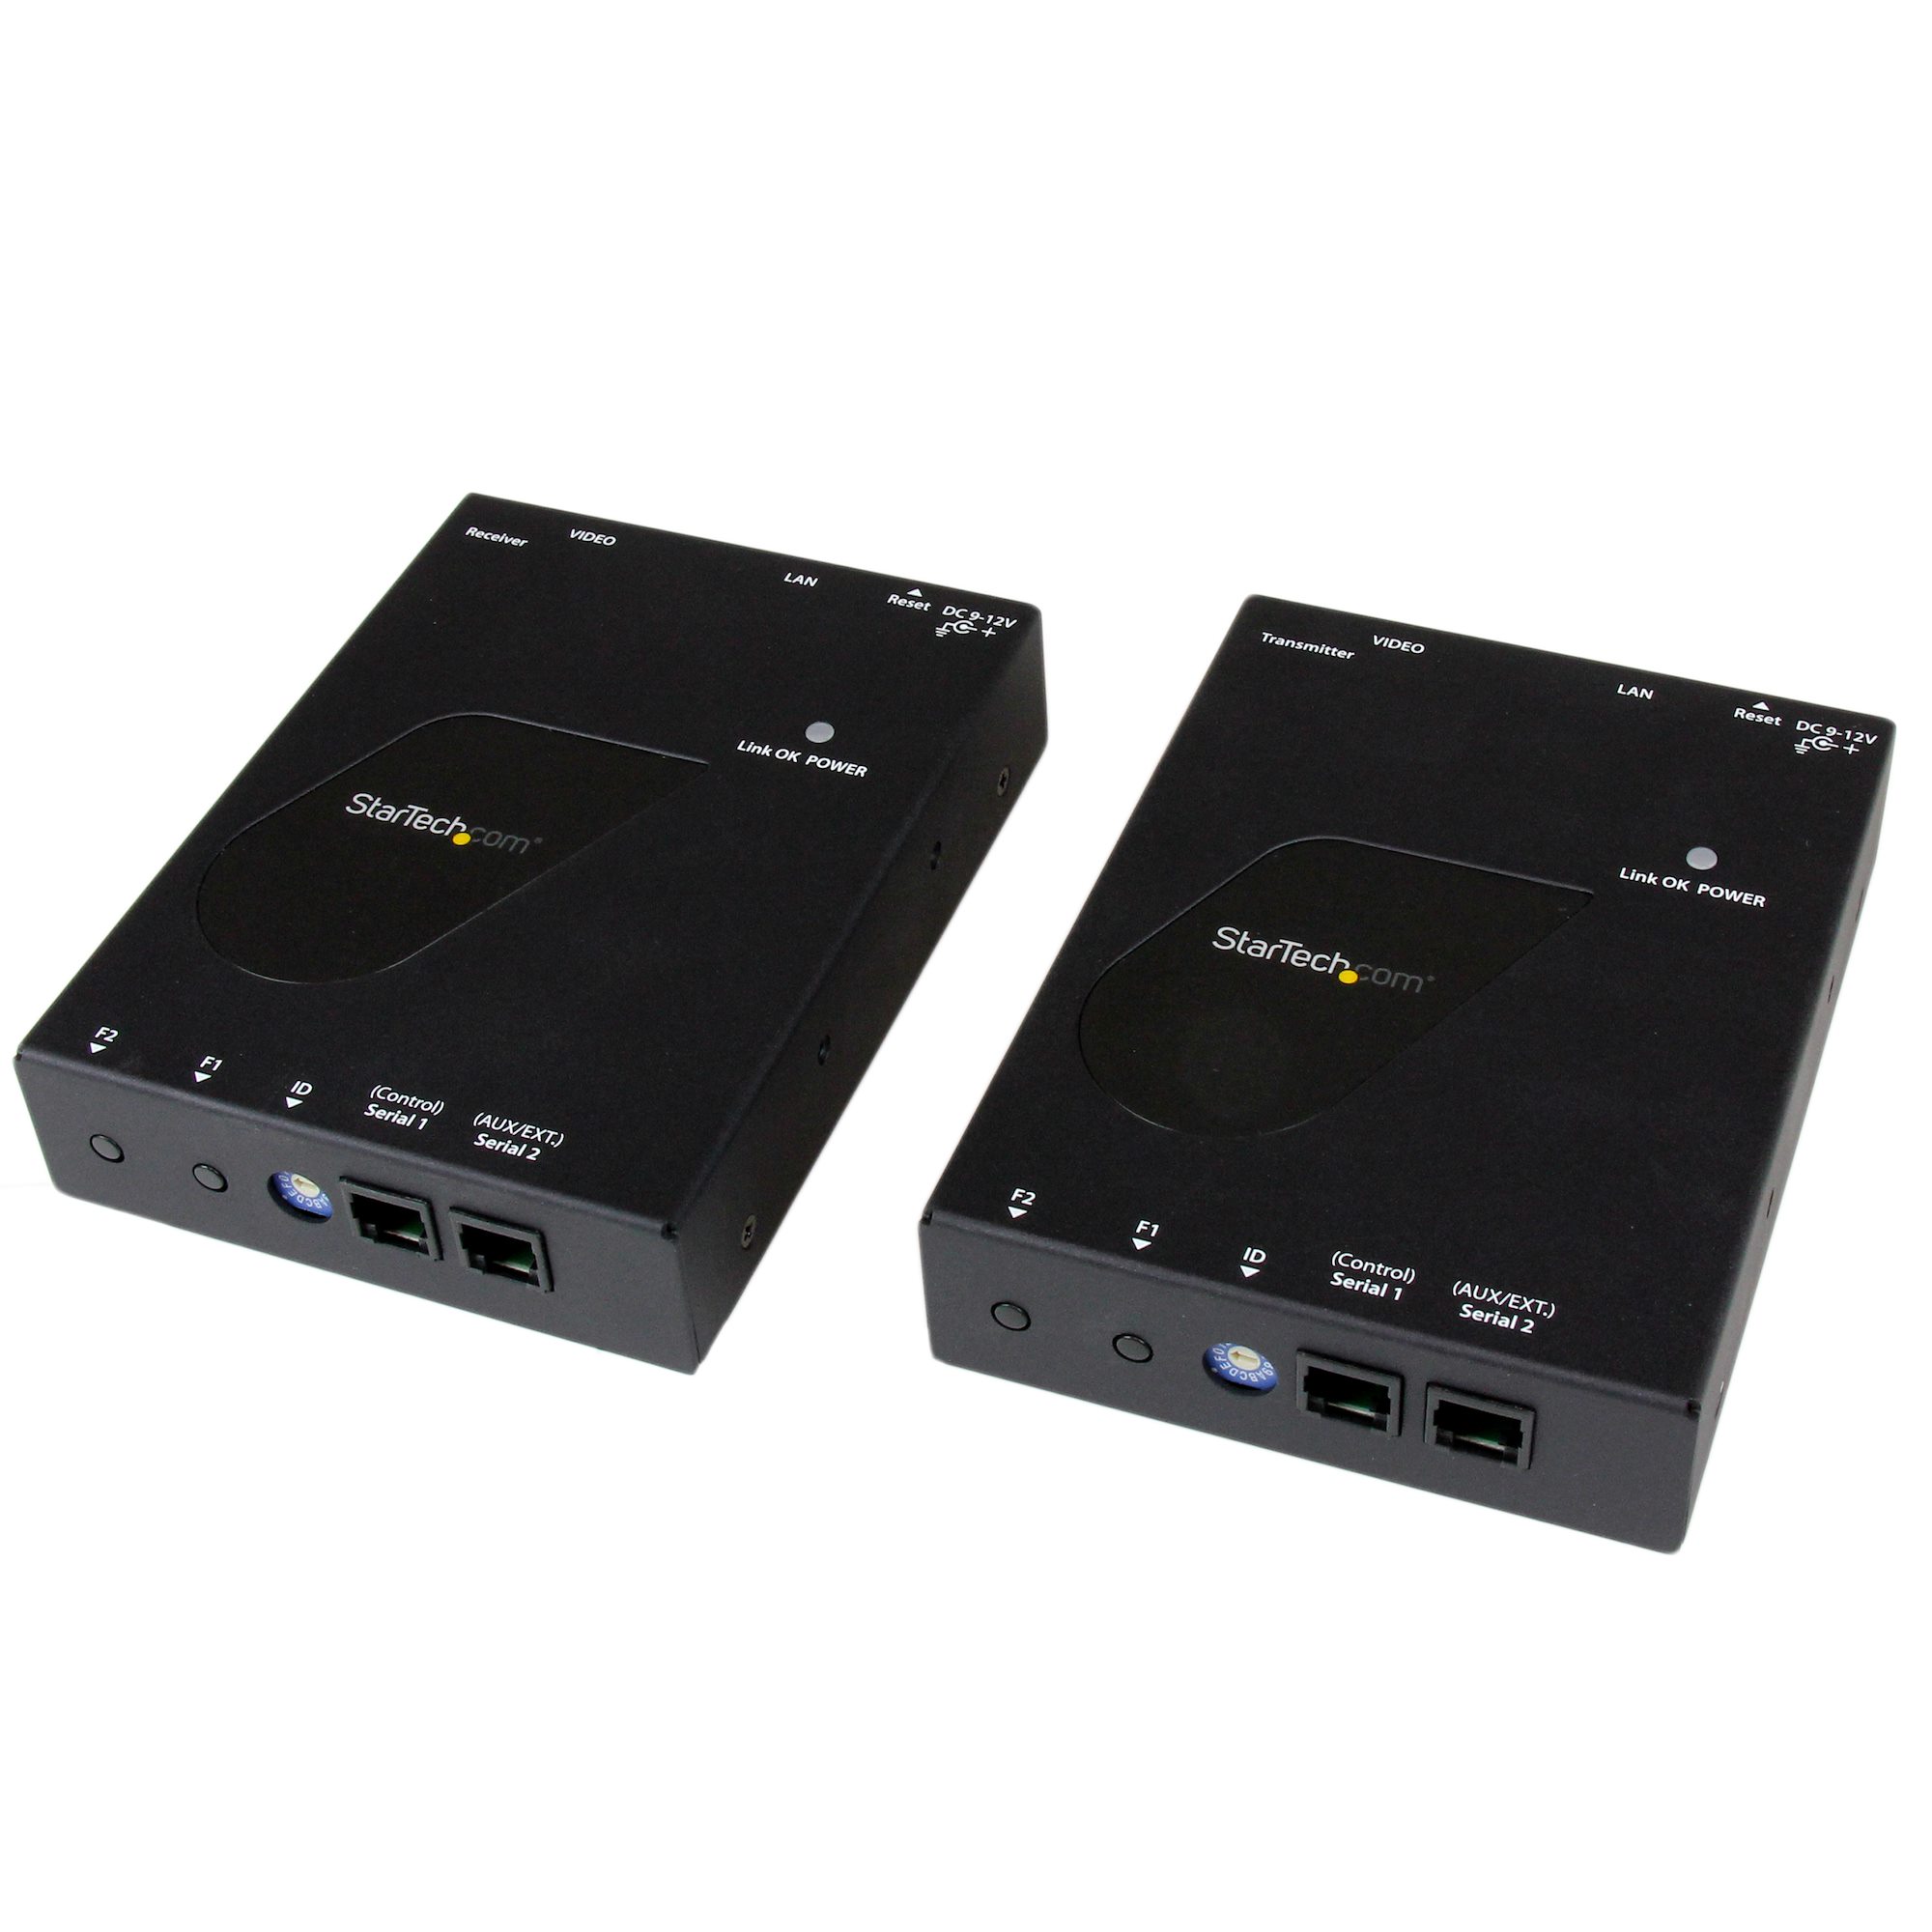 ギフト MR: IP対応HDMI延長分配器キット 1080p対応 LAN回線経由型HDMI信号エクステンダー送受信機セット  Cat 5e ケーブル対応 ST12MHDLAN